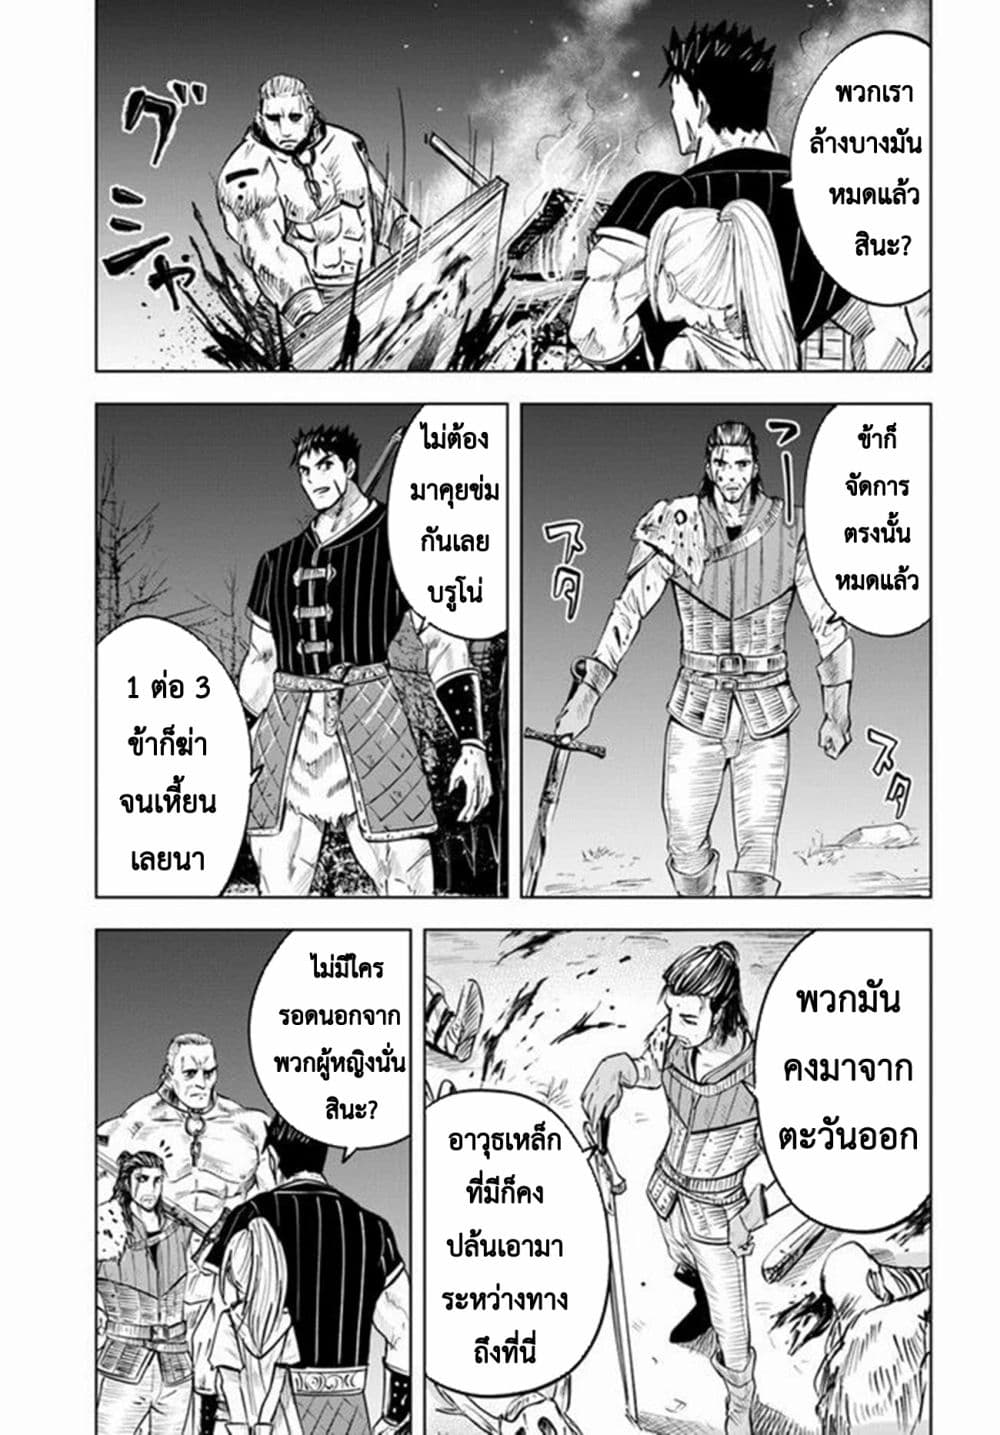 Oukoku e Tsuzuku Michi dorei Kenshi no Nariagari Eiyutan (Haaremu Raifu) - Road to the Kingdom Slave Swordsman the Rise of Heroes - Harem Life 14-14